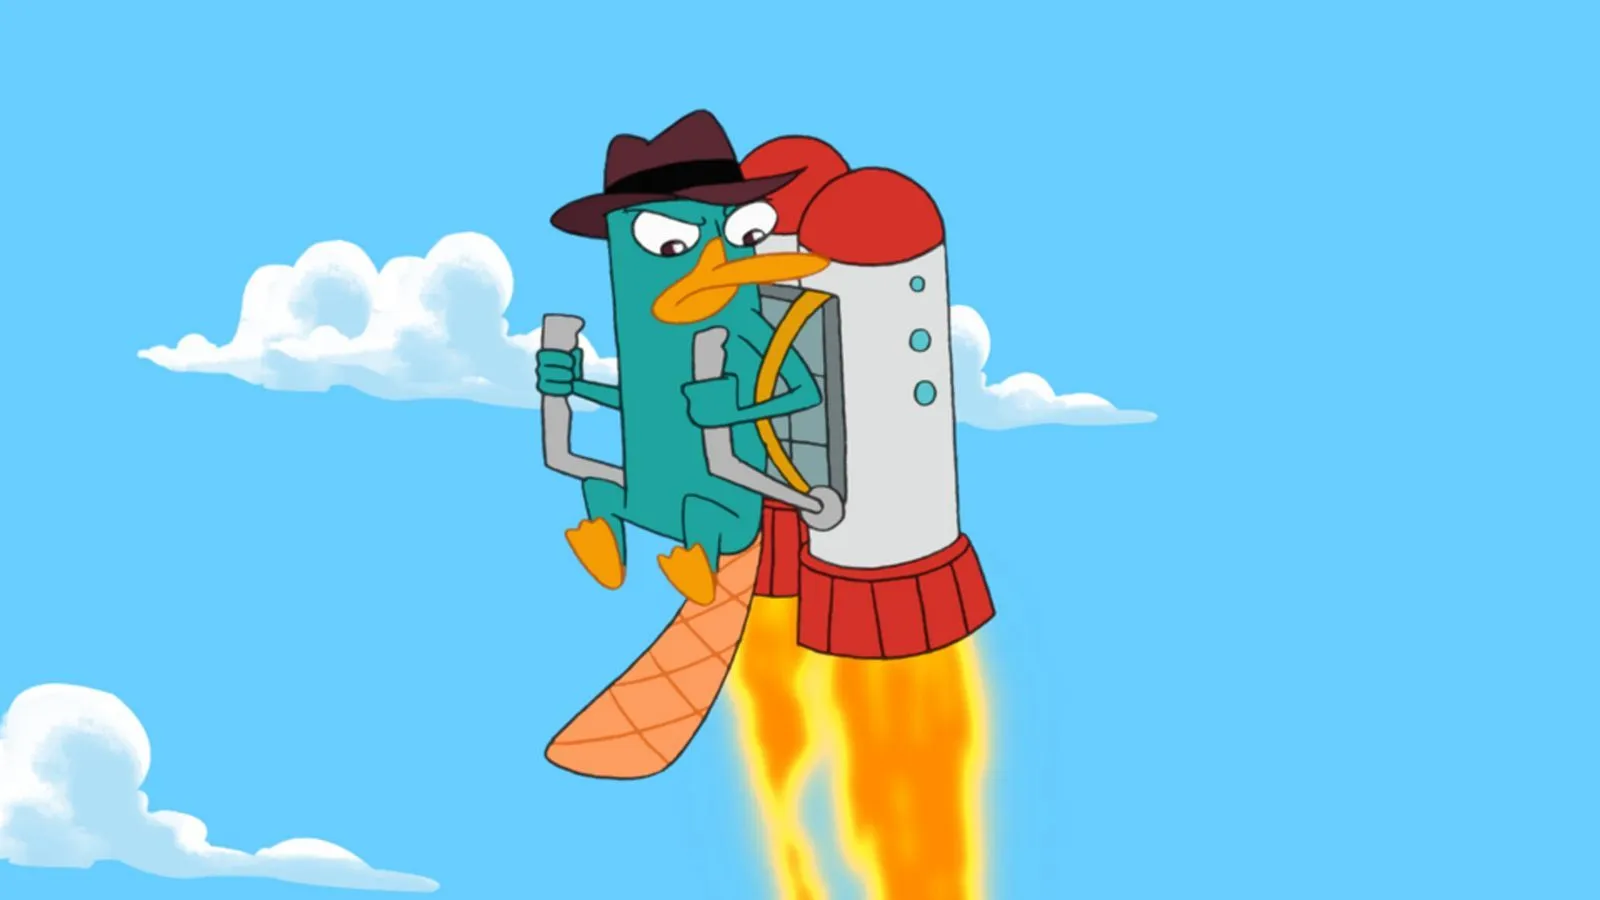 Imágenes y fondos de Phineas, Ferb y Perry el ornitorrinco - Mil ...